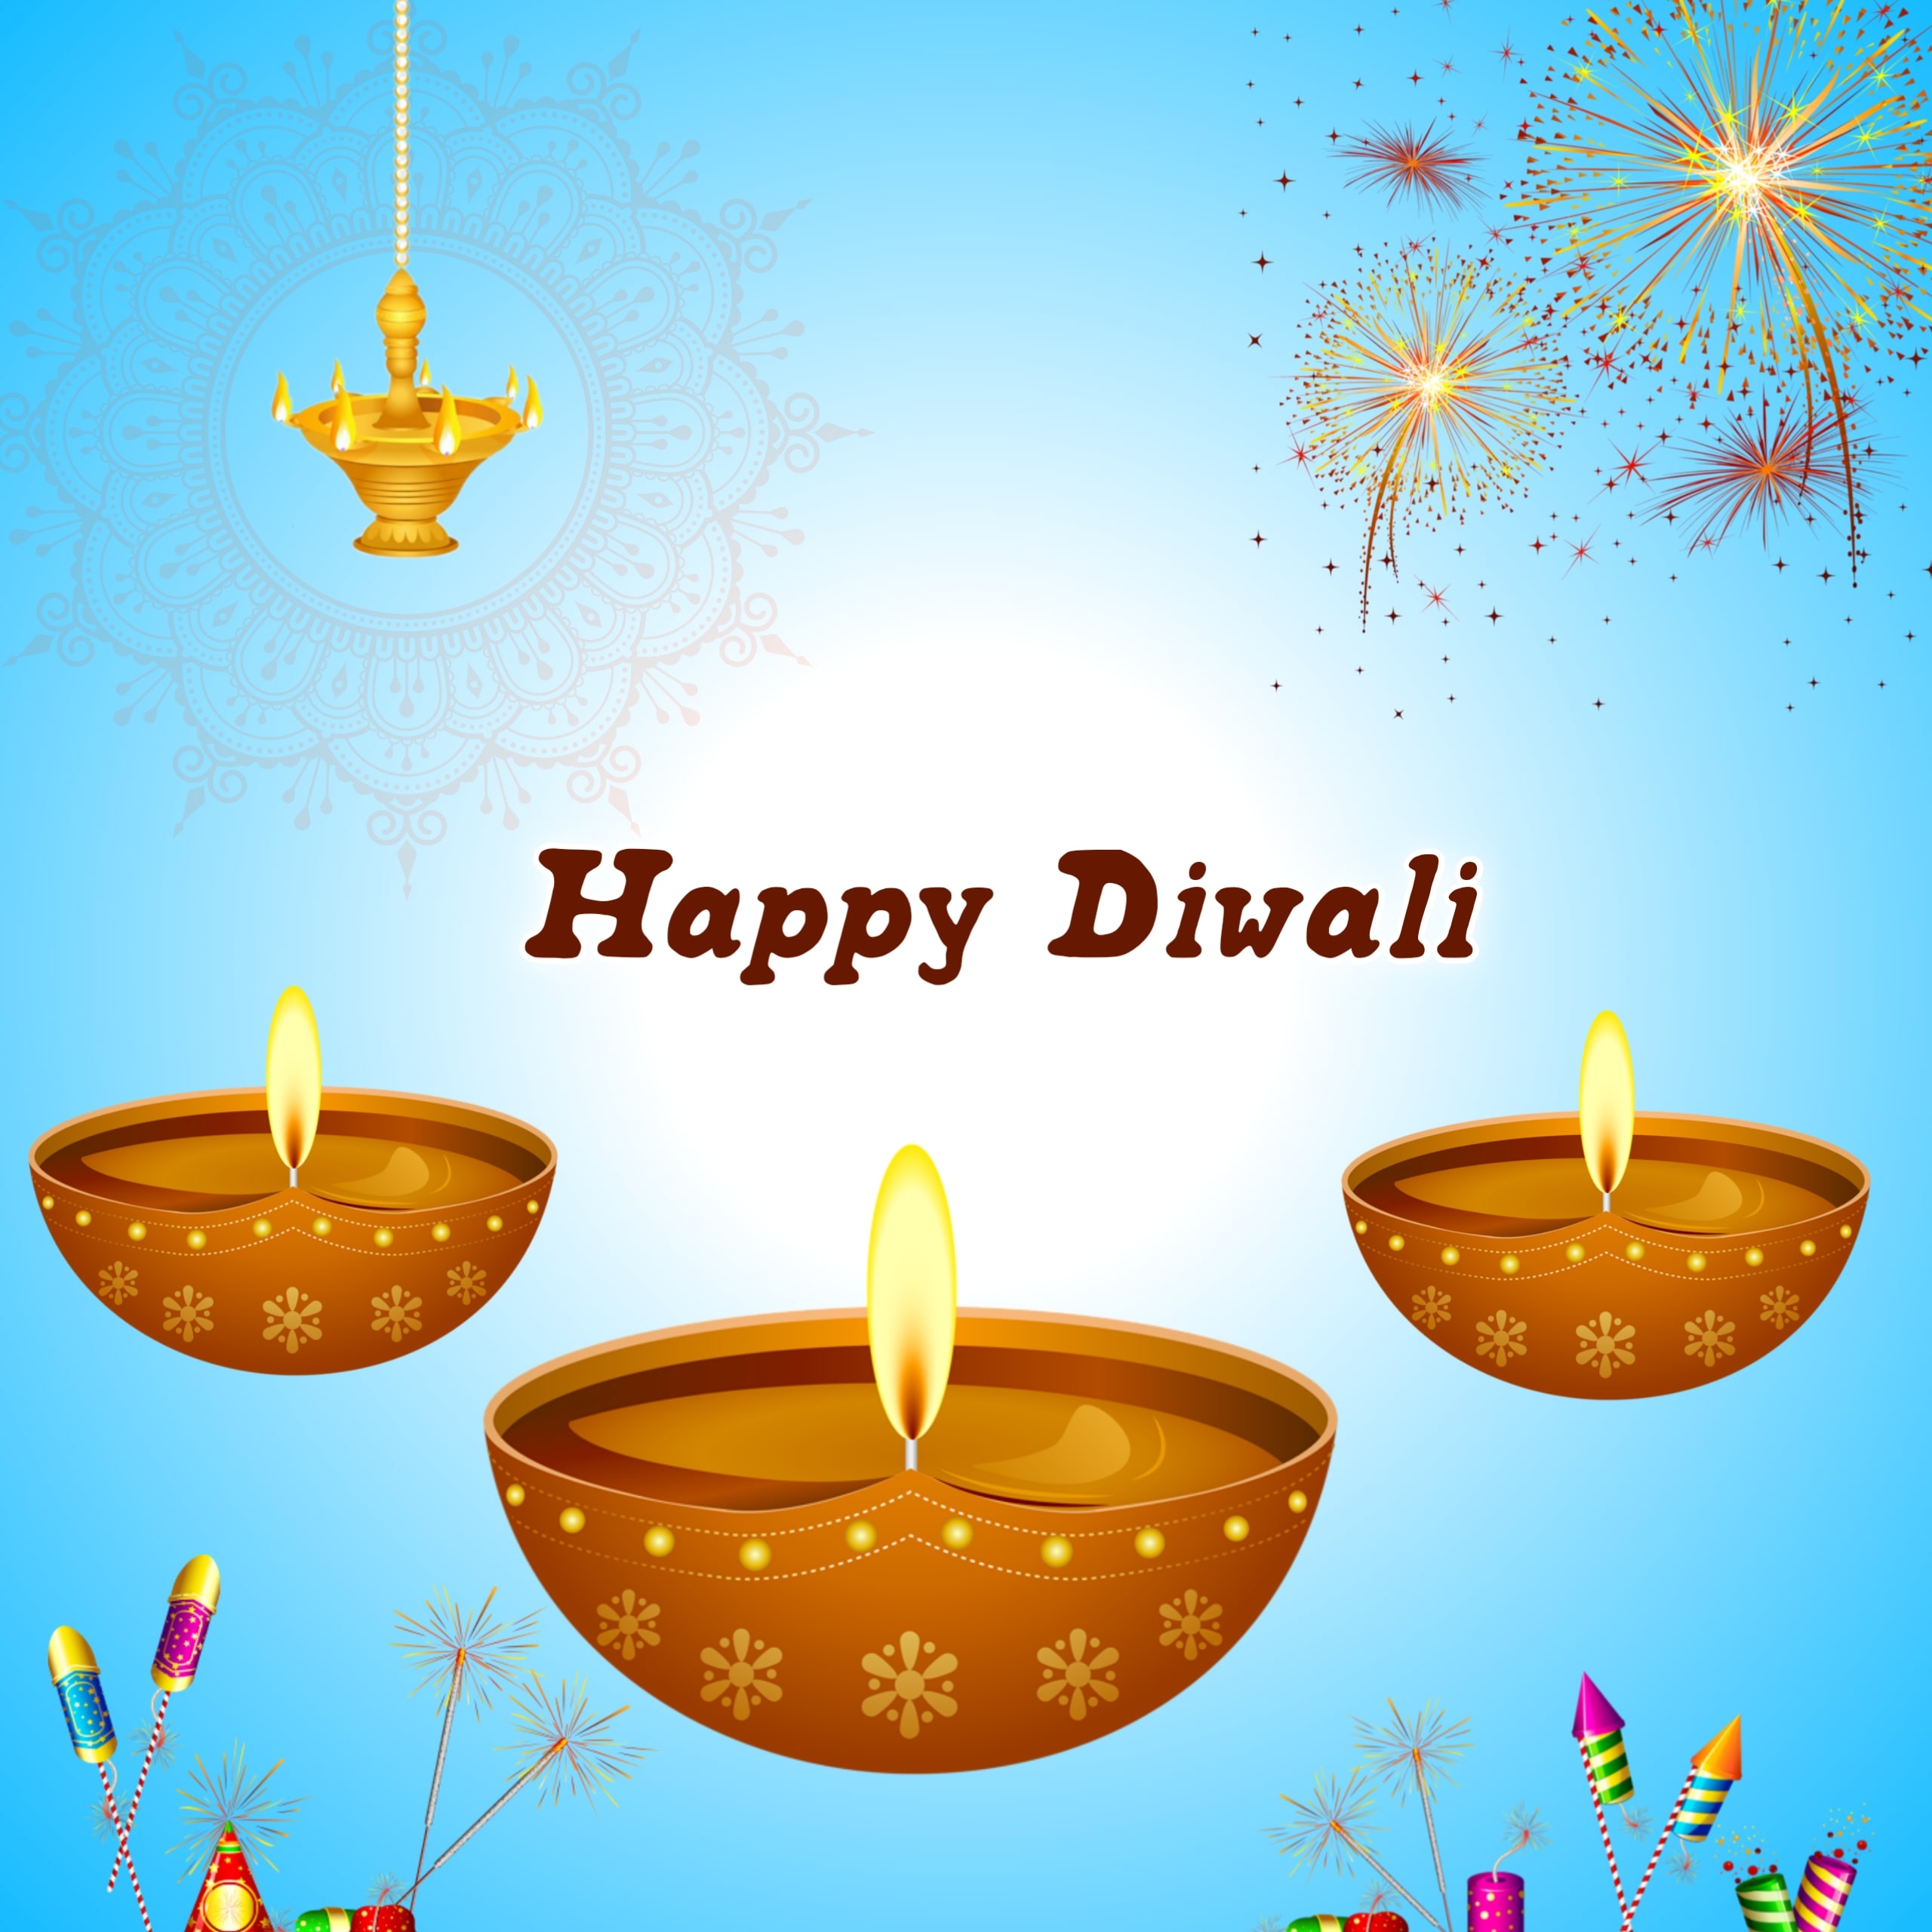 Happy Diwali Wishes Image With Diya Pataka